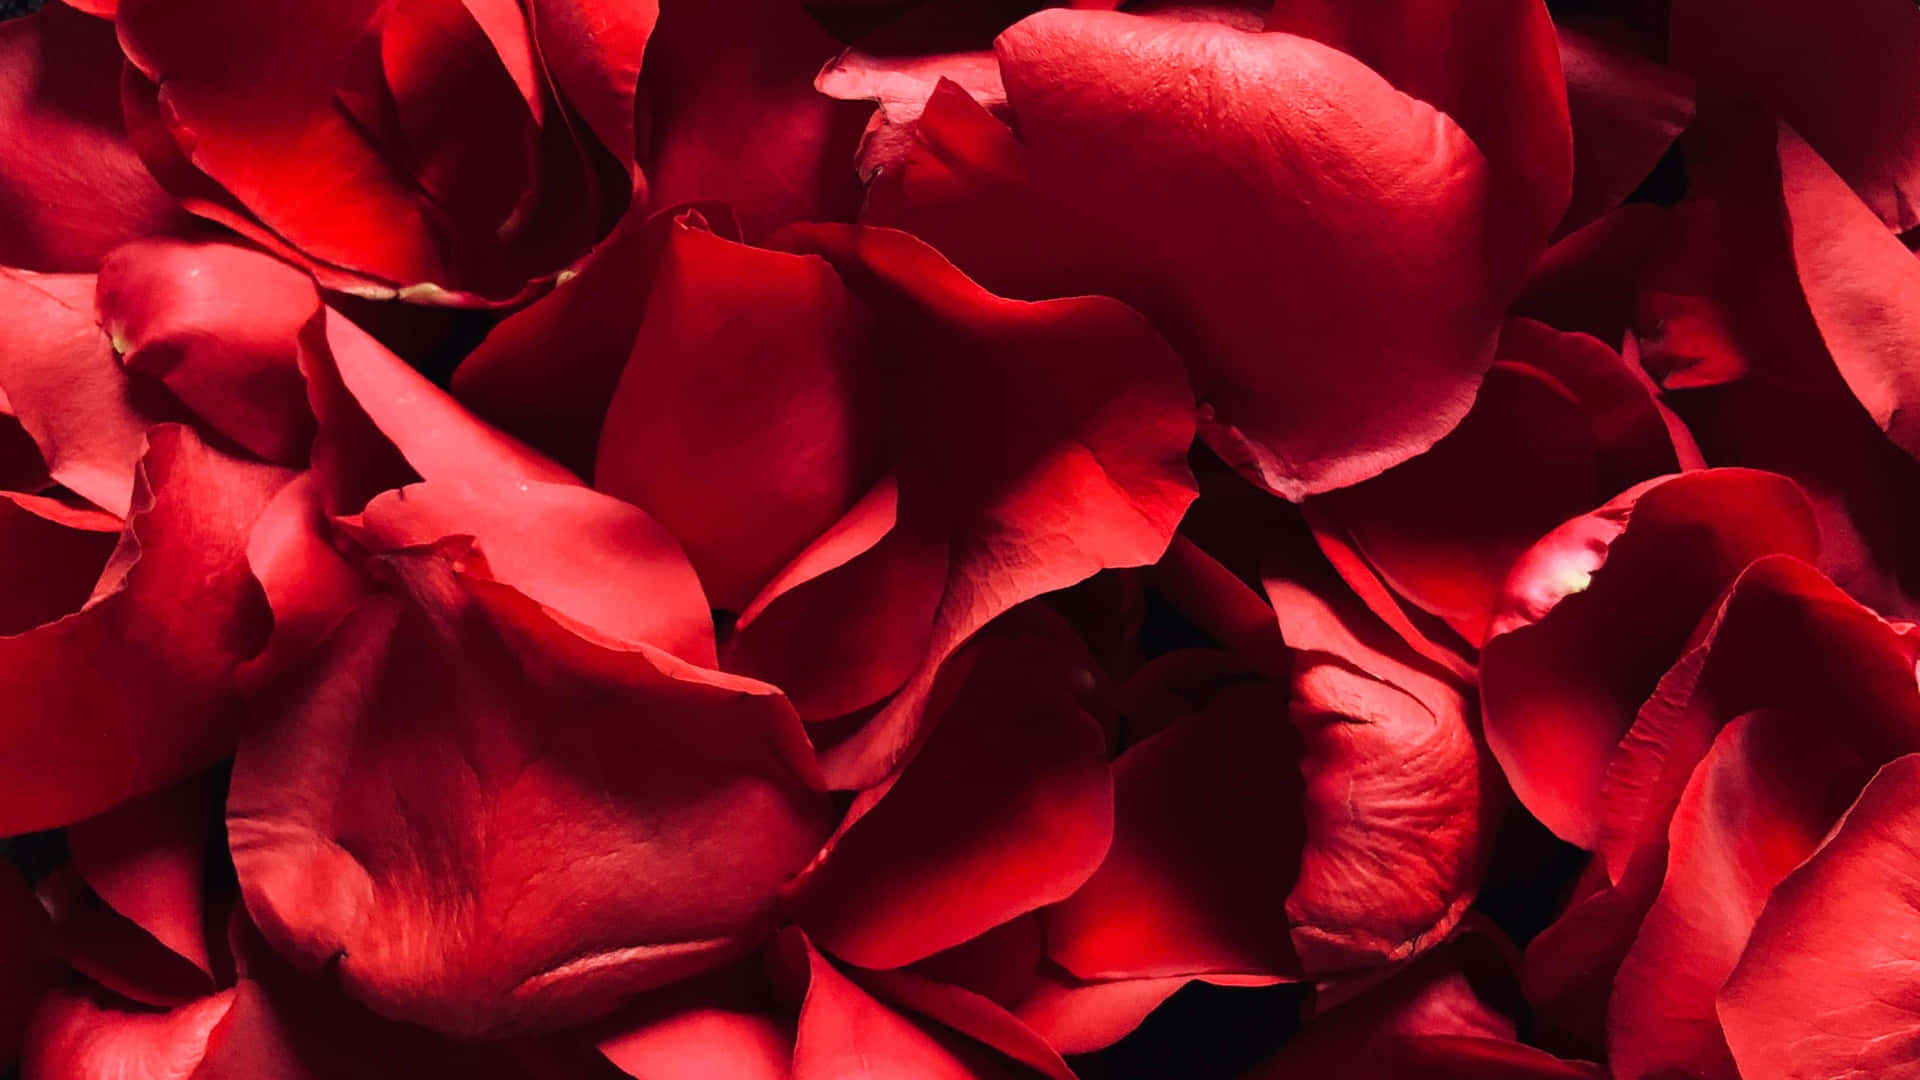 Vibrant Red Rose Petals4 K Wallpaper